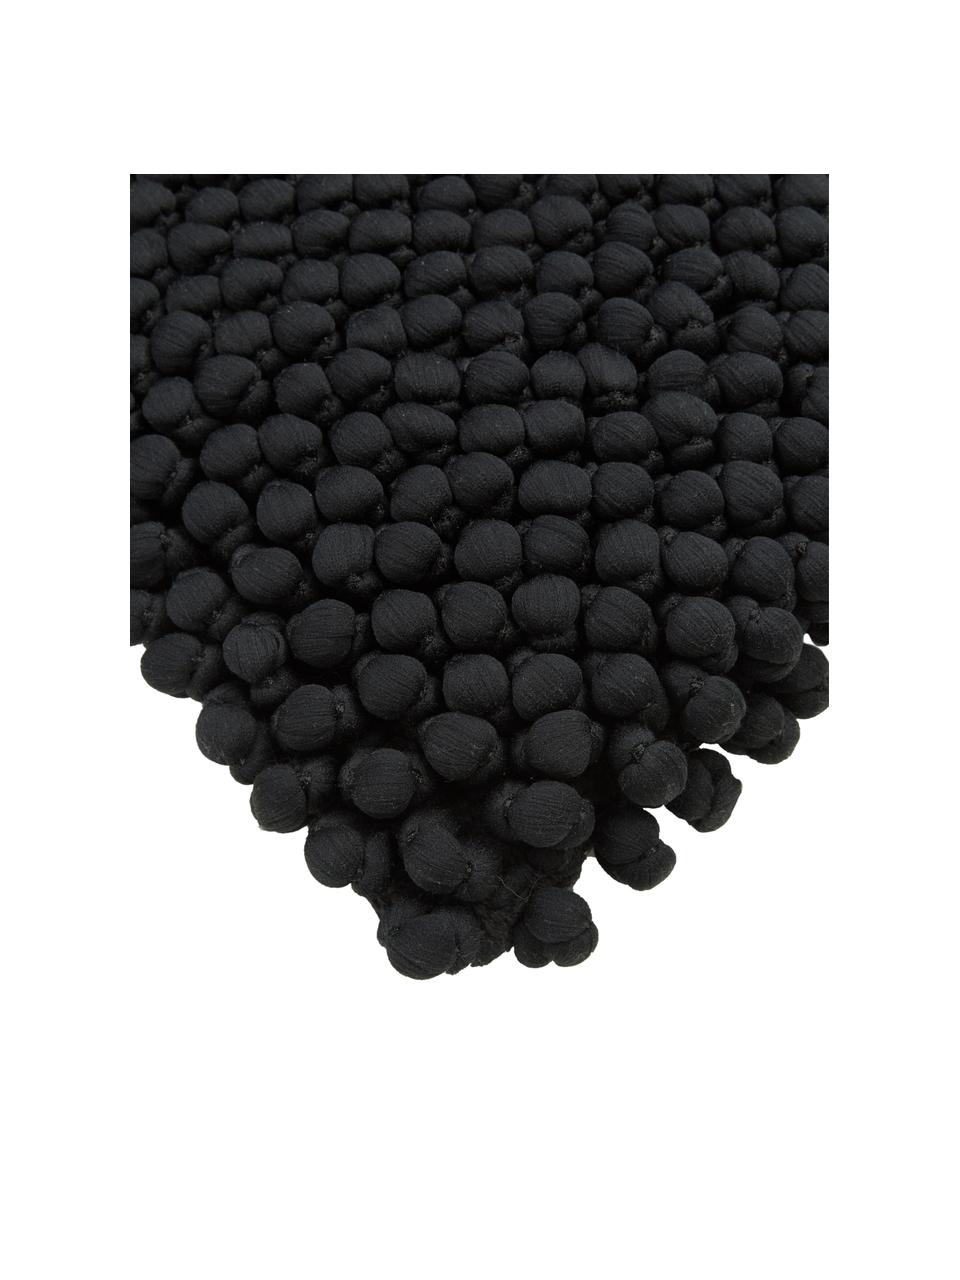 Kussenhoes Iona met kleine stoffen bolletjes in zwart, Zwart, B 45 x L 45 cm